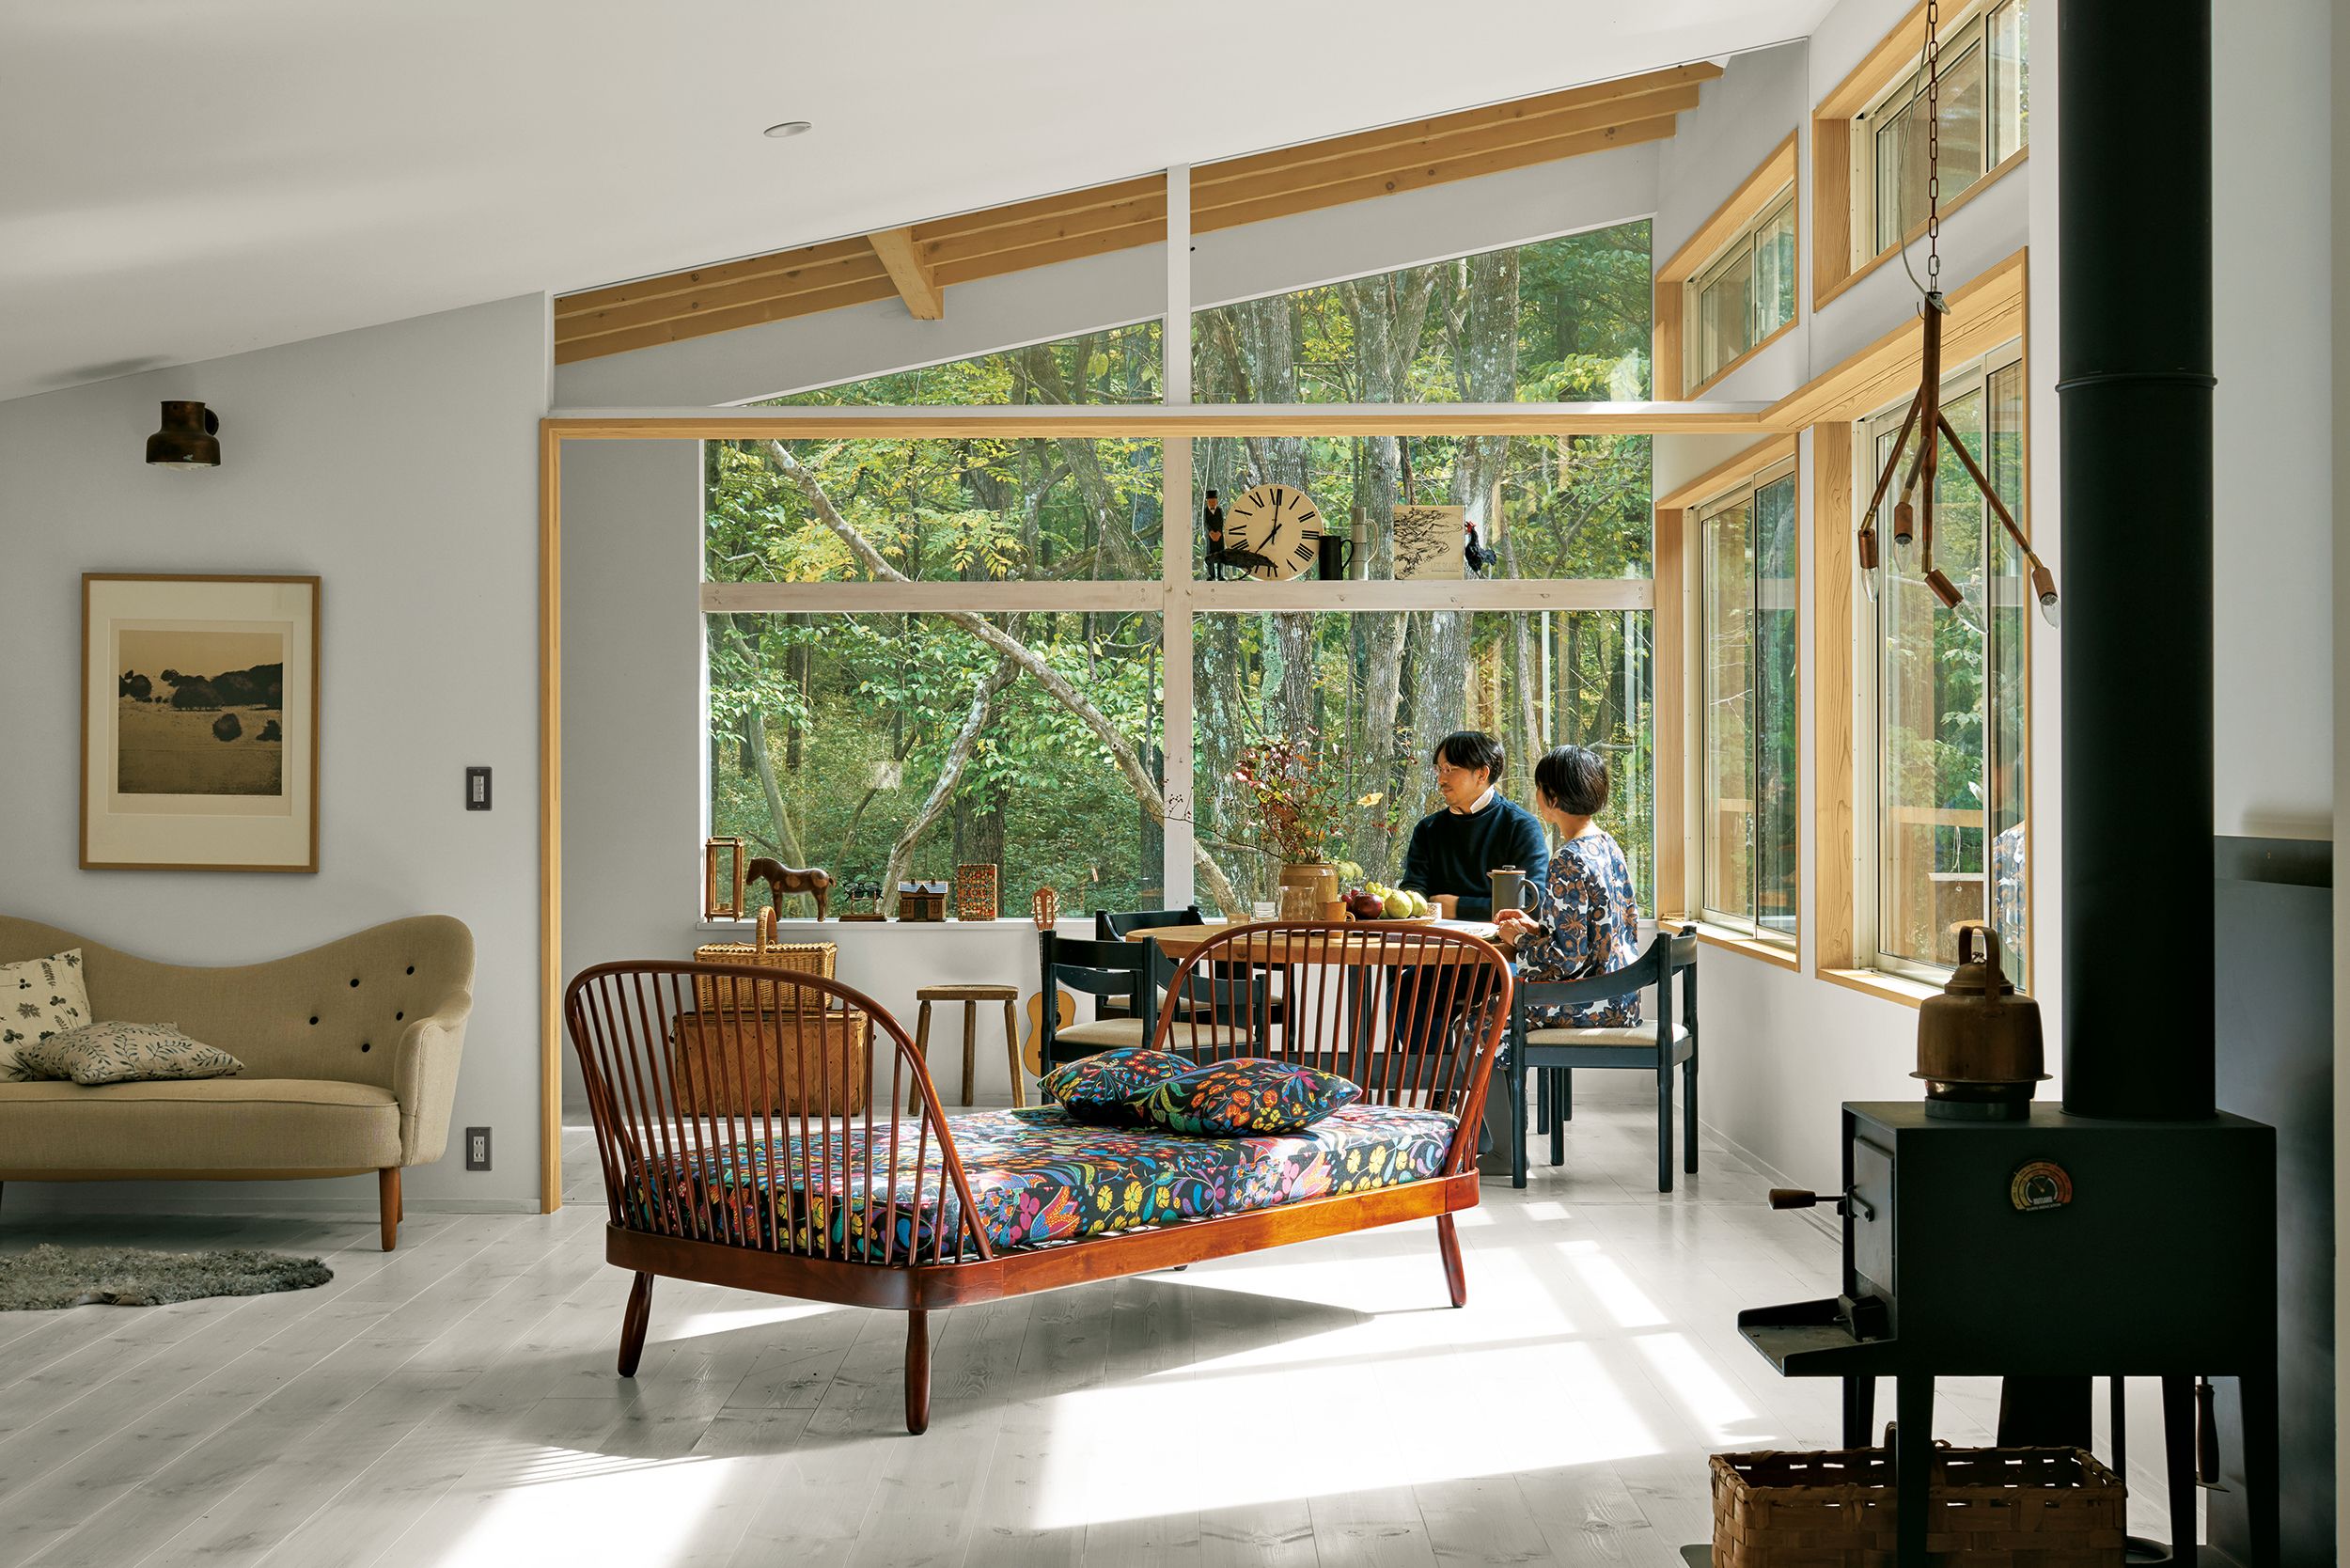 知られざるスウェーデン家具の魅力。“NATUR”オーナー須長 檀さんが暮らす 軽井沢の森の住まい